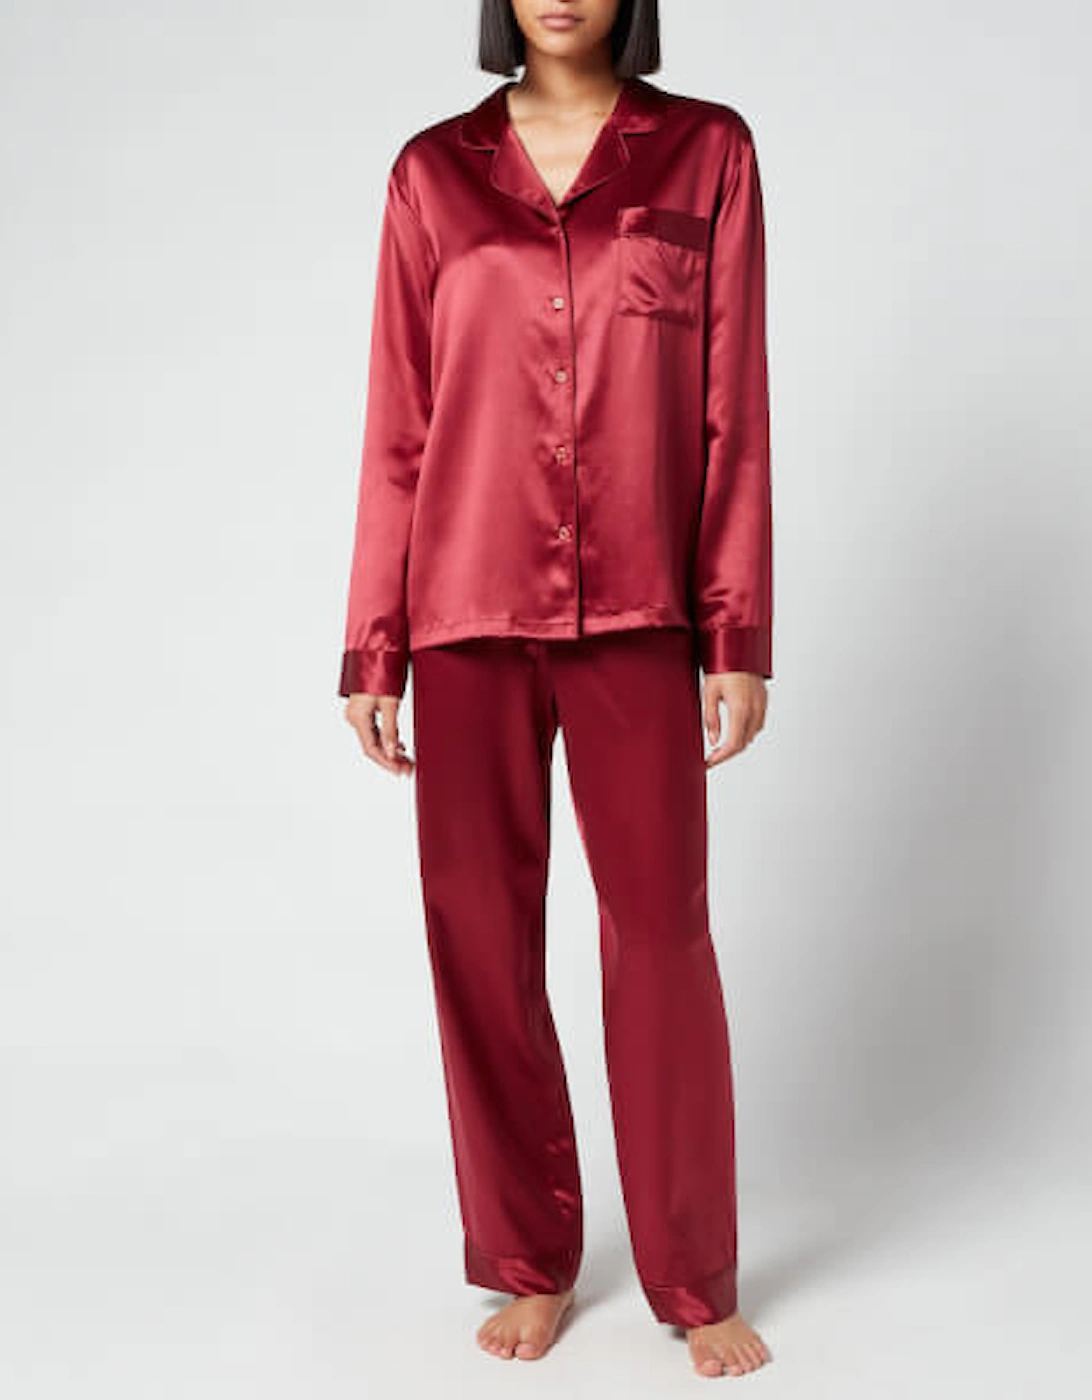 Silk Pyjamas - Claret Rose - XL, 2 of 1